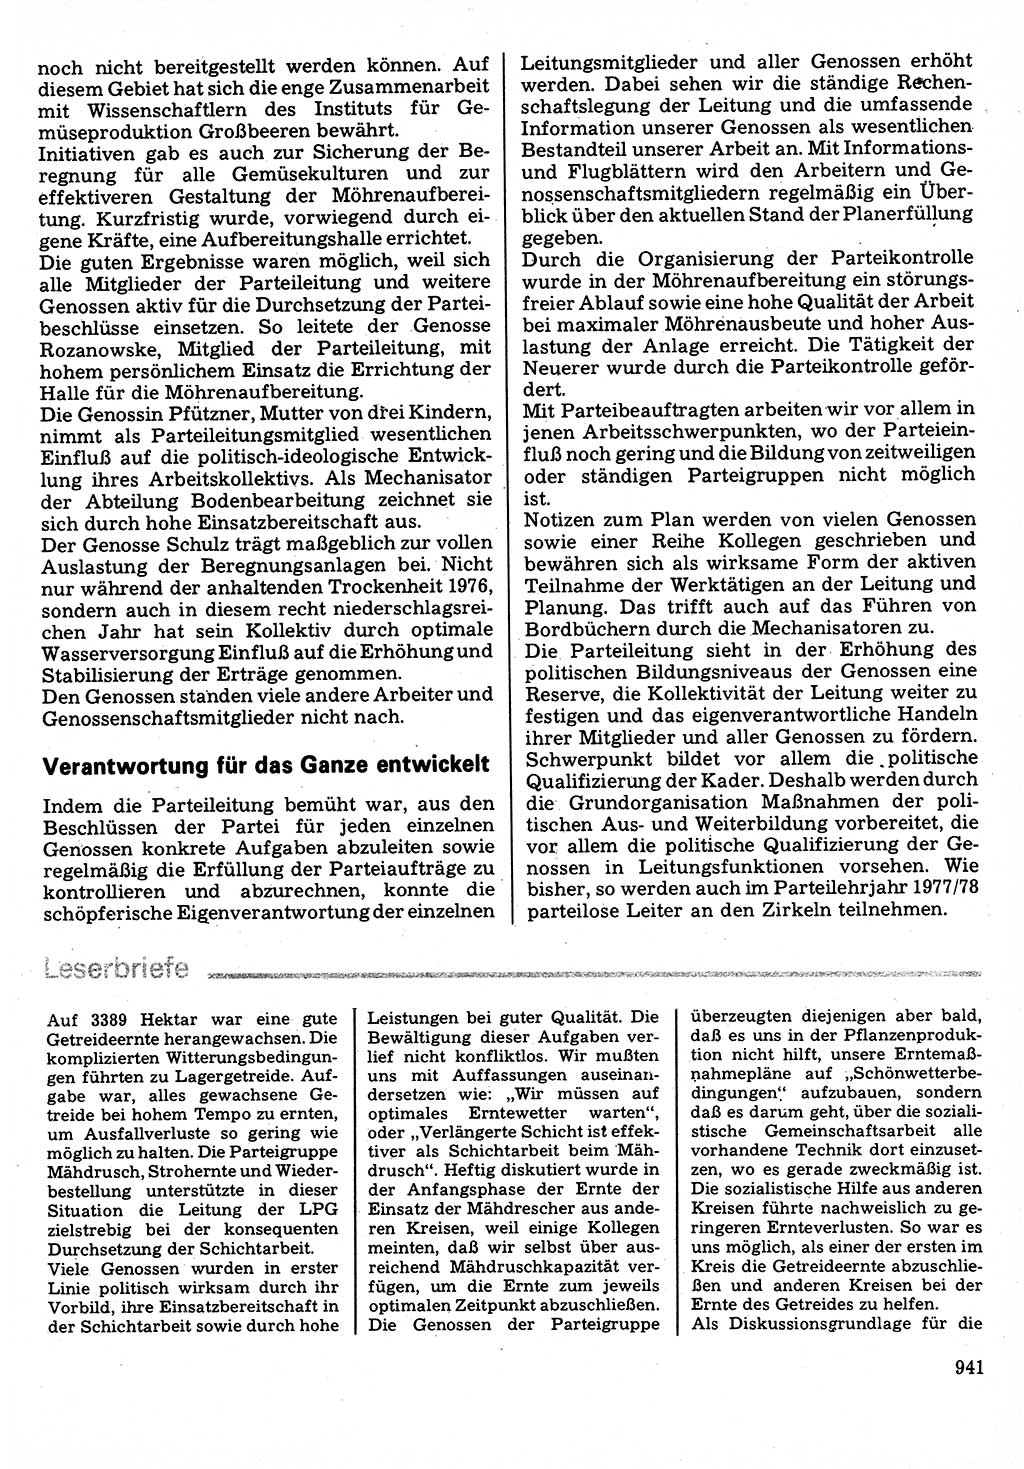 Neuer Weg (NW), Organ des Zentralkomitees (ZK) der SED (Sozialistische Einheitspartei Deutschlands) für Fragen des Parteilebens, 32. Jahrgang [Deutsche Demokratische Republik (DDR)] 1977, Seite 941 (NW ZK SED DDR 1977, S. 941)